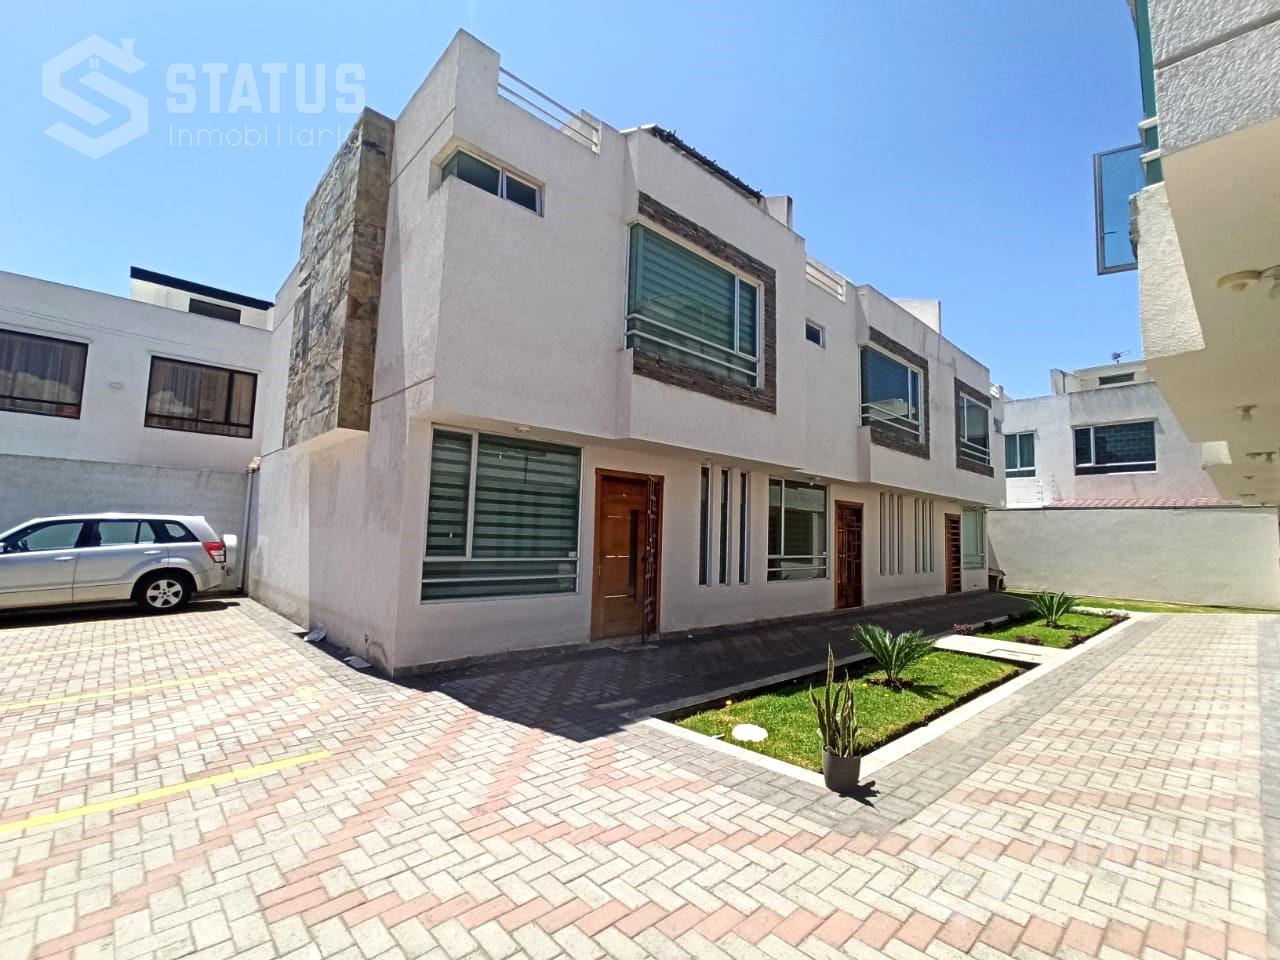 Se vende casa en Conjunto 160m, 3 Dorm., 1 Garaje,San Nicolás de las Abras-Riobamba, $79.900